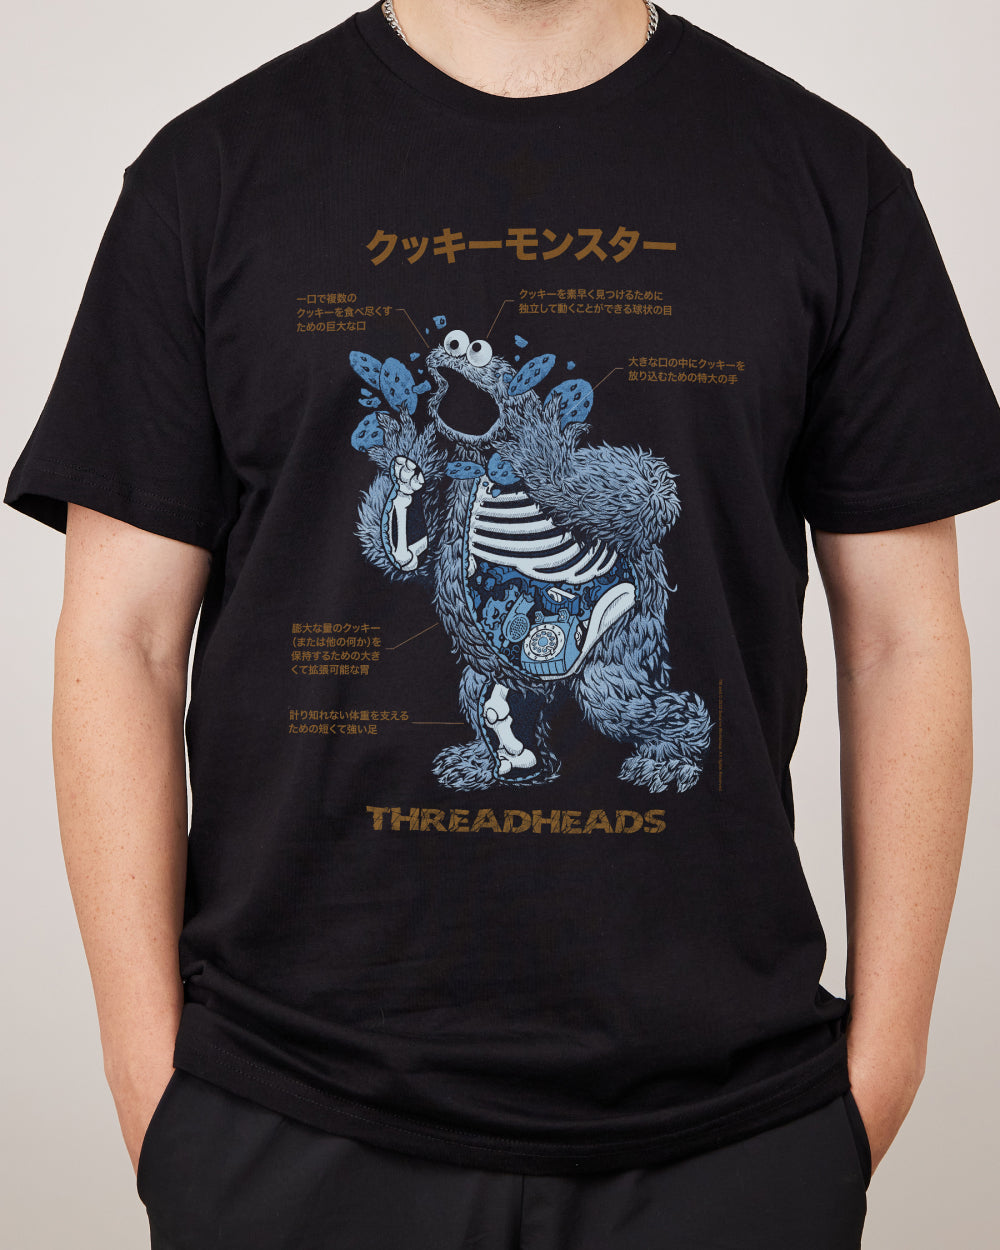 Cookie Monster Anatomy T-Shirt | Official Sesame Street Merch